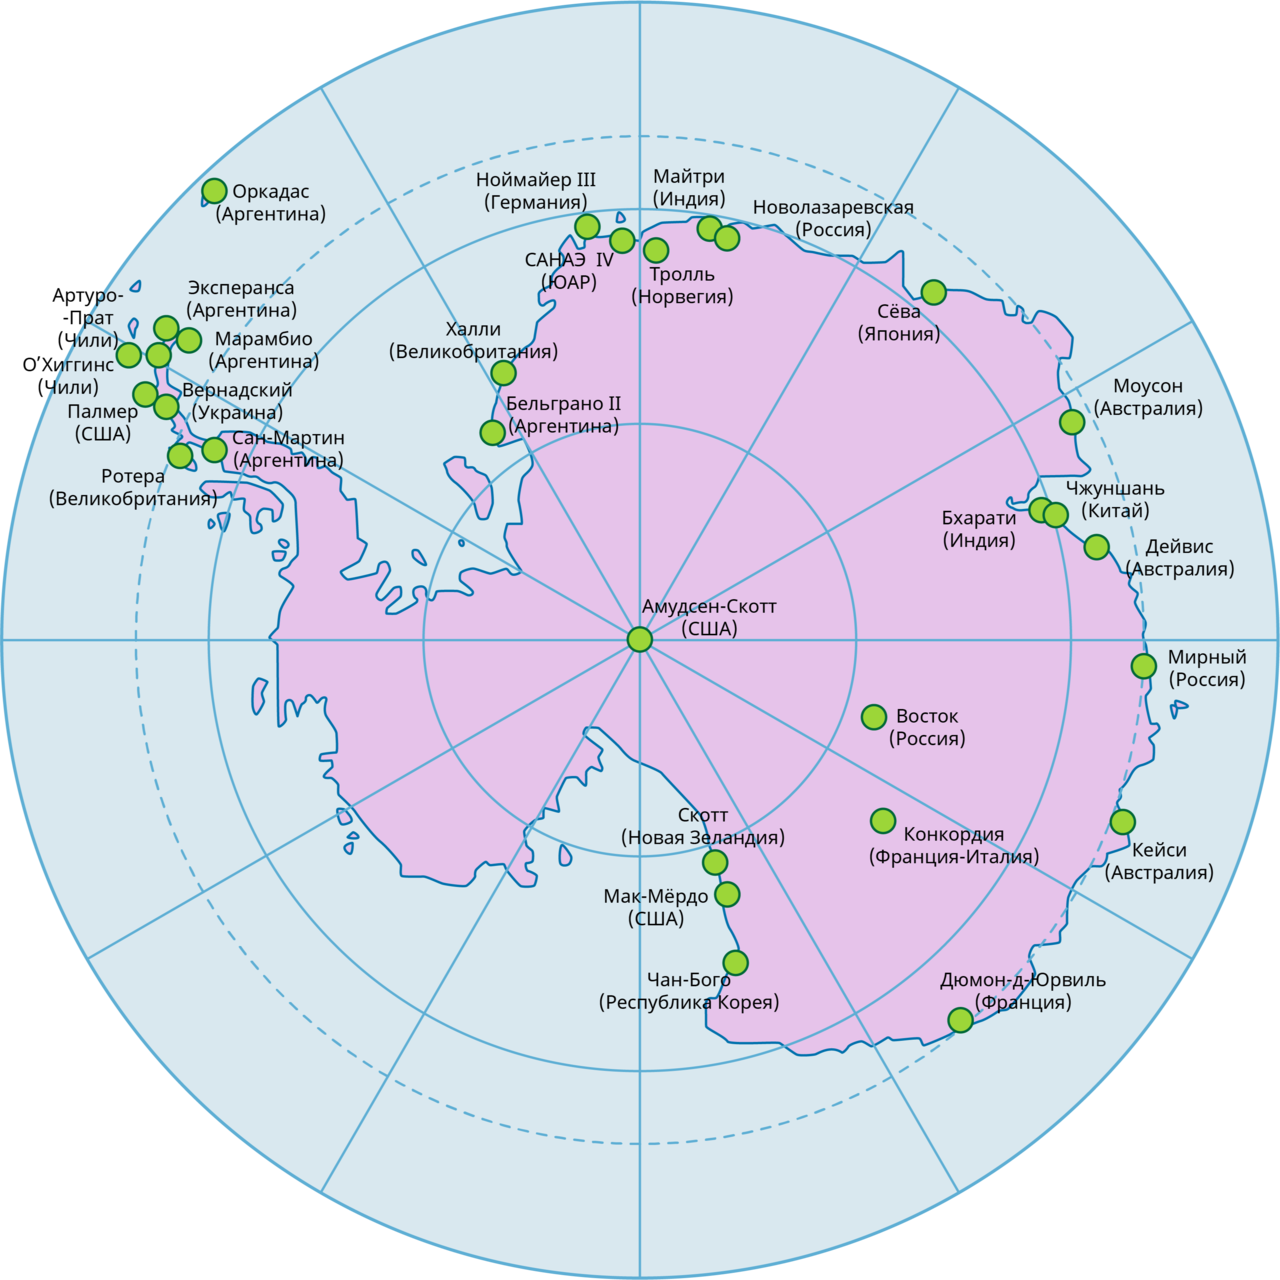 Западный станций карта. Научные станции в Антарктиде на карте. Полярные станции в Антарктиде на карте. Полярные станции России на карте Антарктики. Научная станция Мирный в Антарктиде на карте.